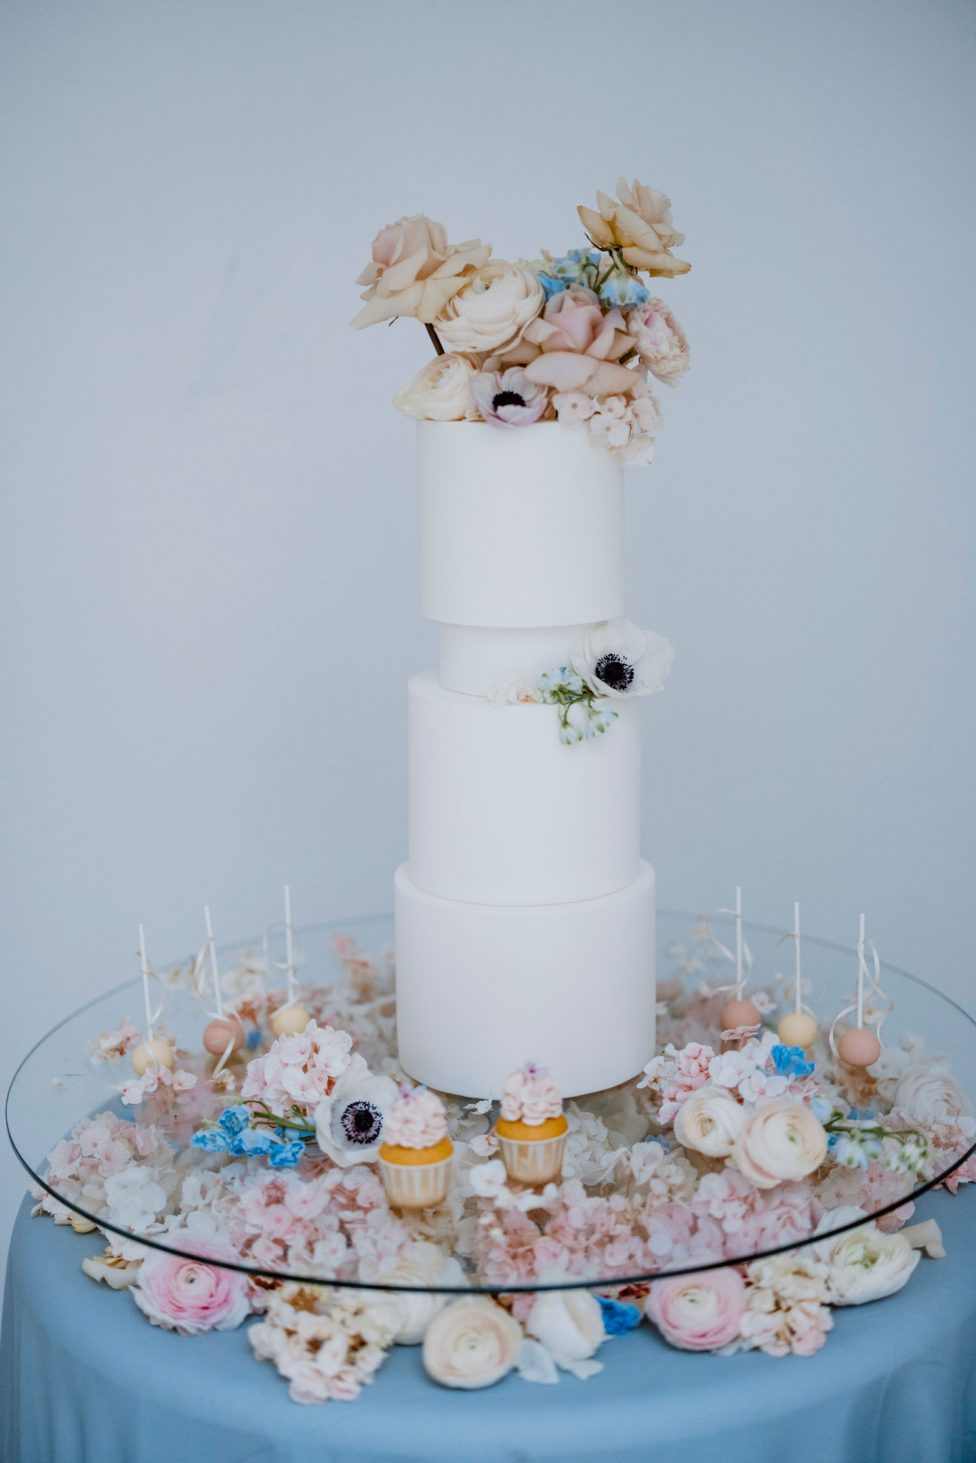 Hochzeitswahn - Eine elegante dreistöckige weiße Hochzeitstorte, geschmückt mit pastellfarbenen Blumen, umgeben von einer Reihe wunderschön dekorierter Cupcakes und floraler Akzente, präsentiert auf einem Glastisch.